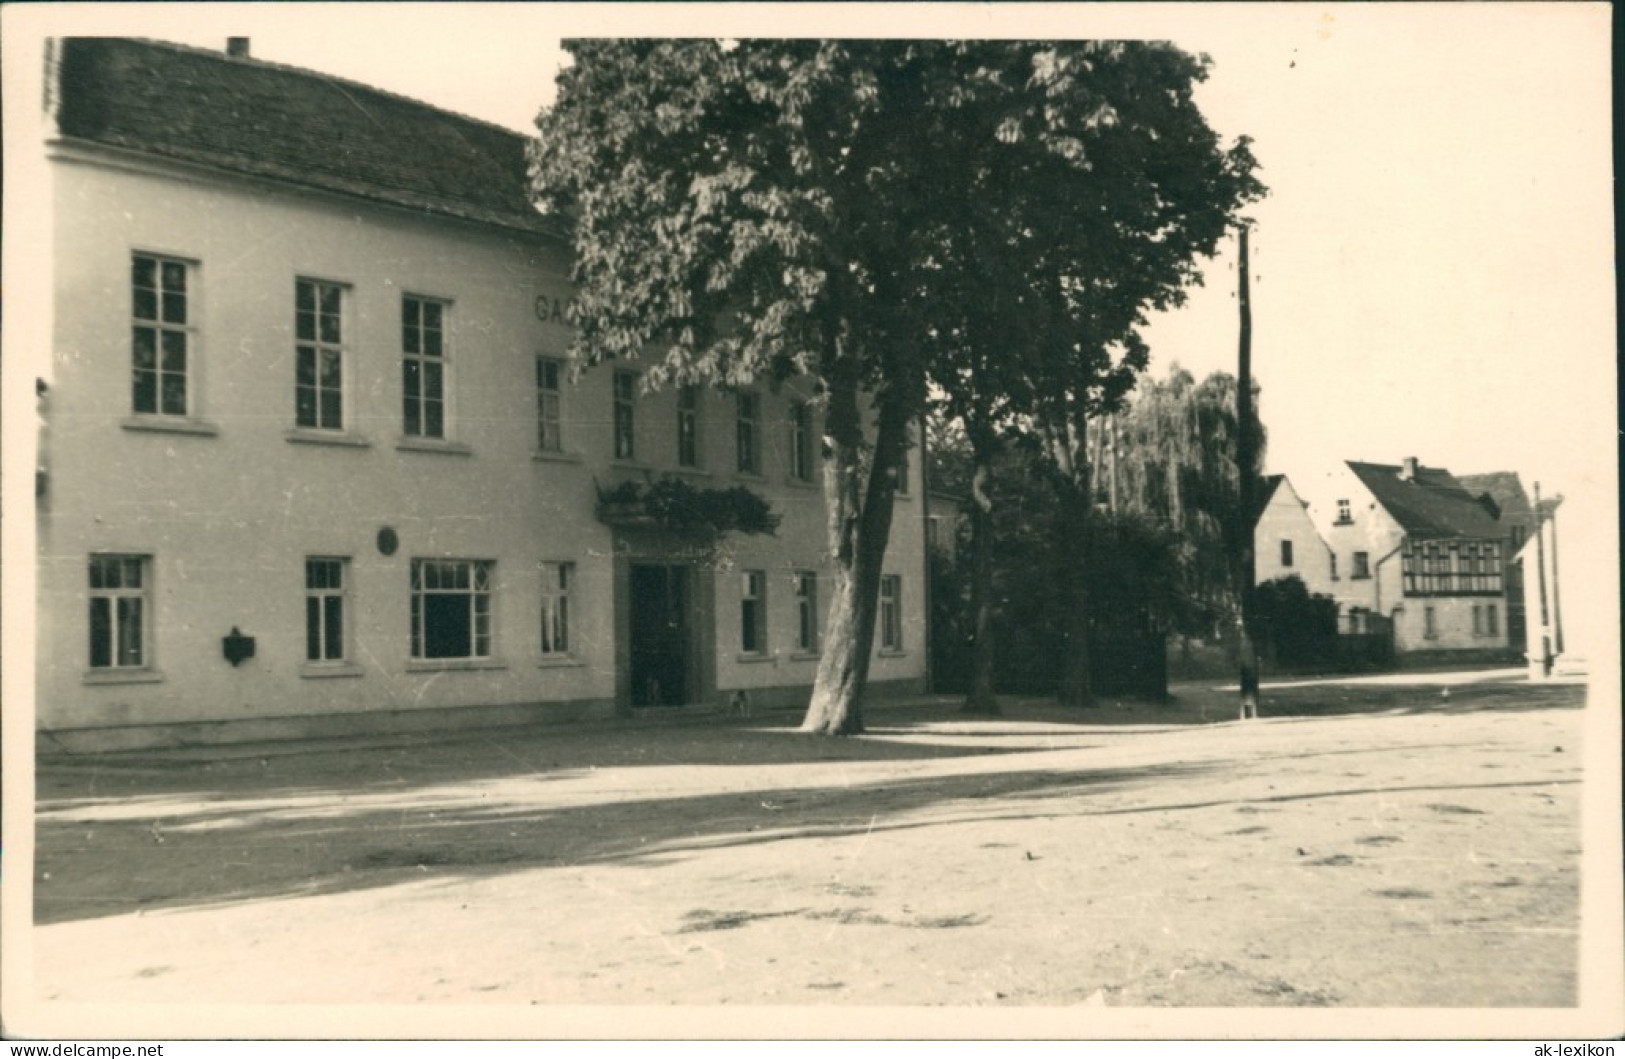 Foto  Gasthaus Mit Baum Vor Der Tür 1912 Privatfoto  - Zu Identifizieren